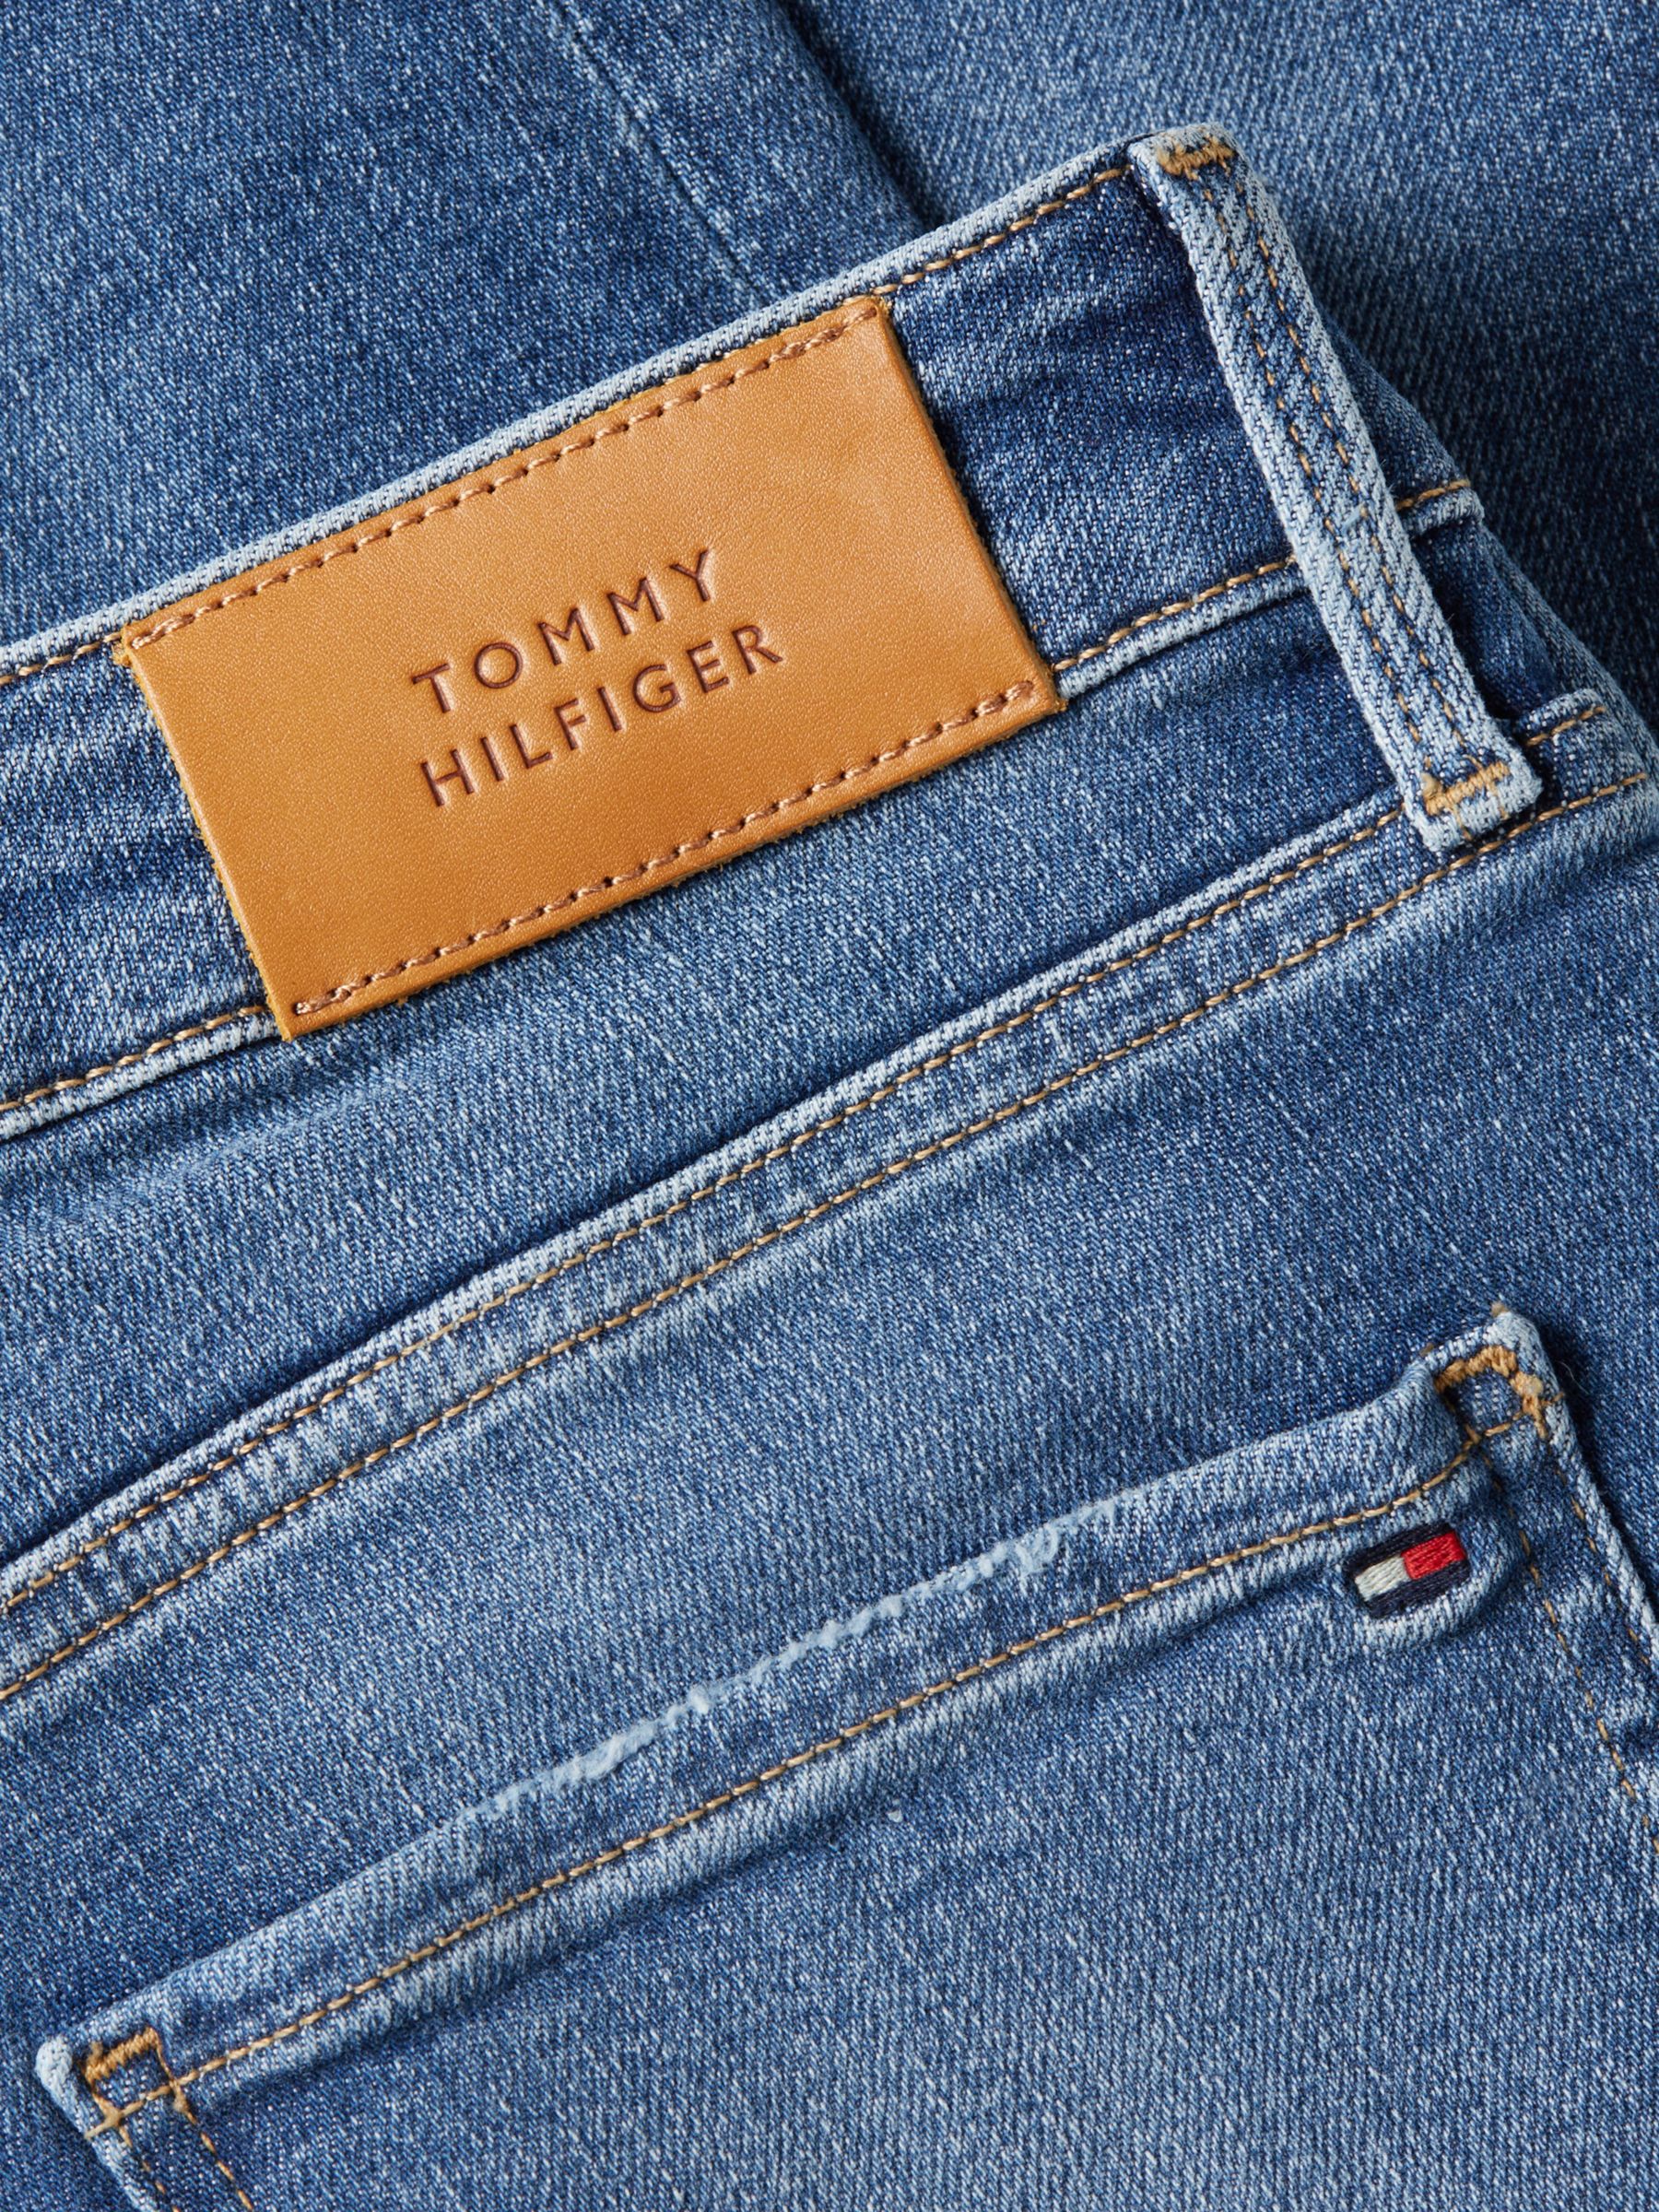 Tommy Hilfiger Curve Lewis Leo & Partners Harlem Jeans, High Skinny Rise John at